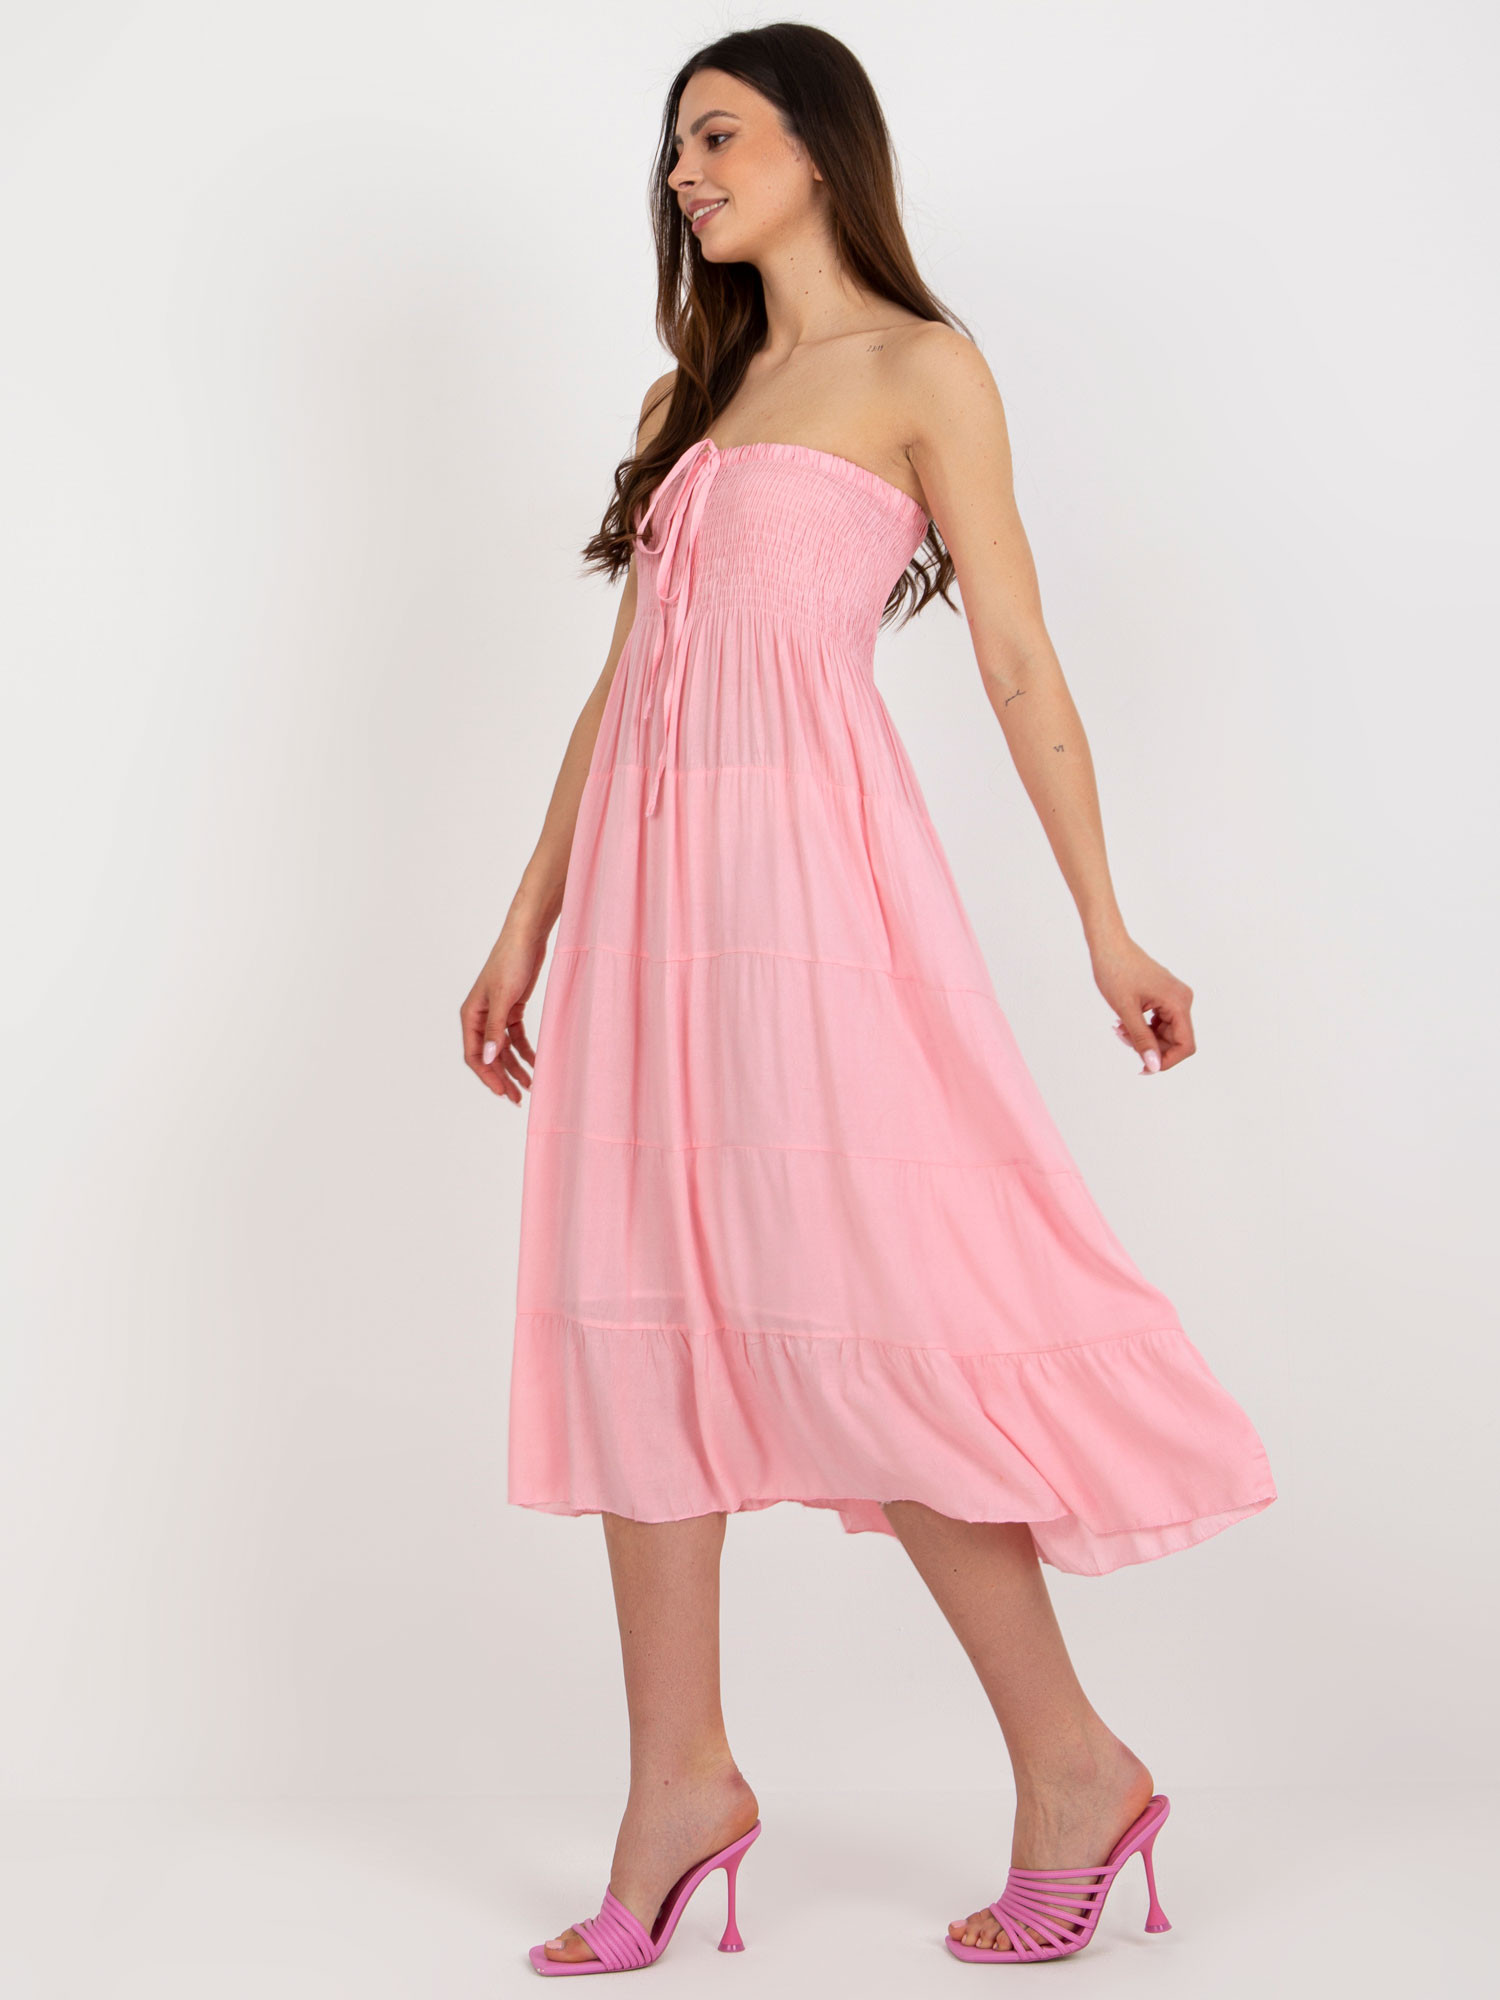 GL SK 827 šaty.17P světle růžová L/XL